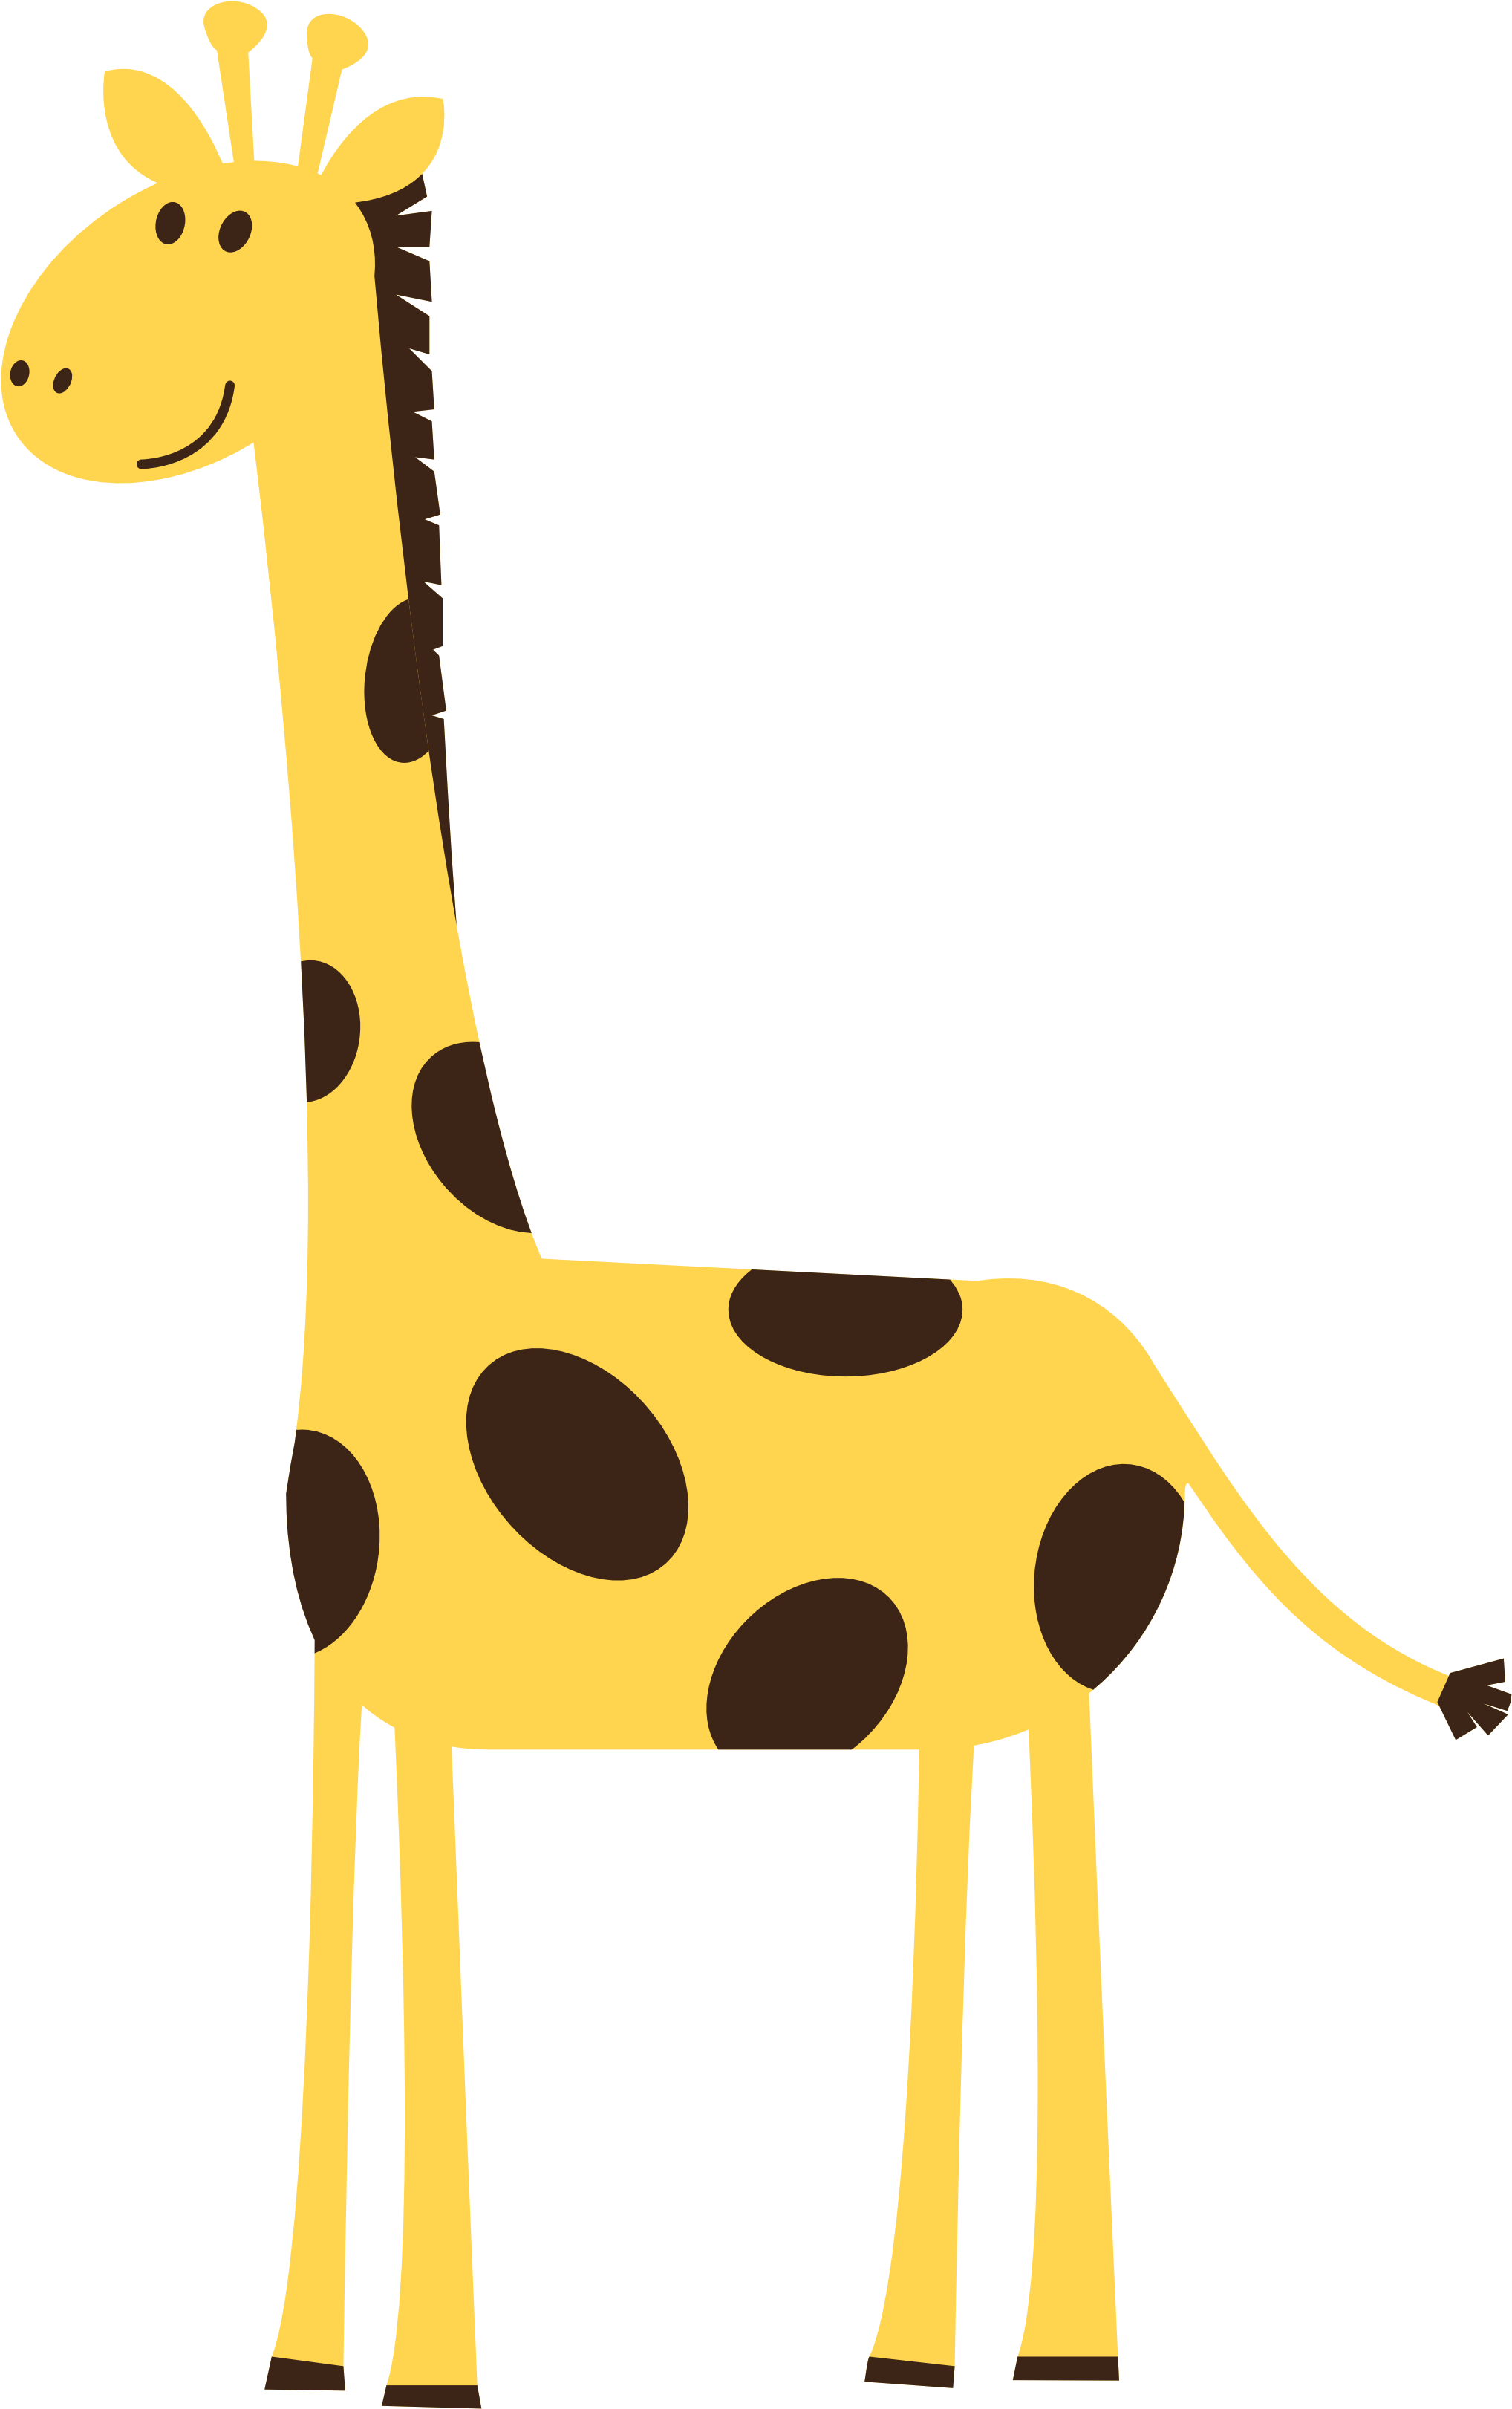 Giraffe Clip Art - Giraffe Whats Up Shower Curtain (3333x3333)